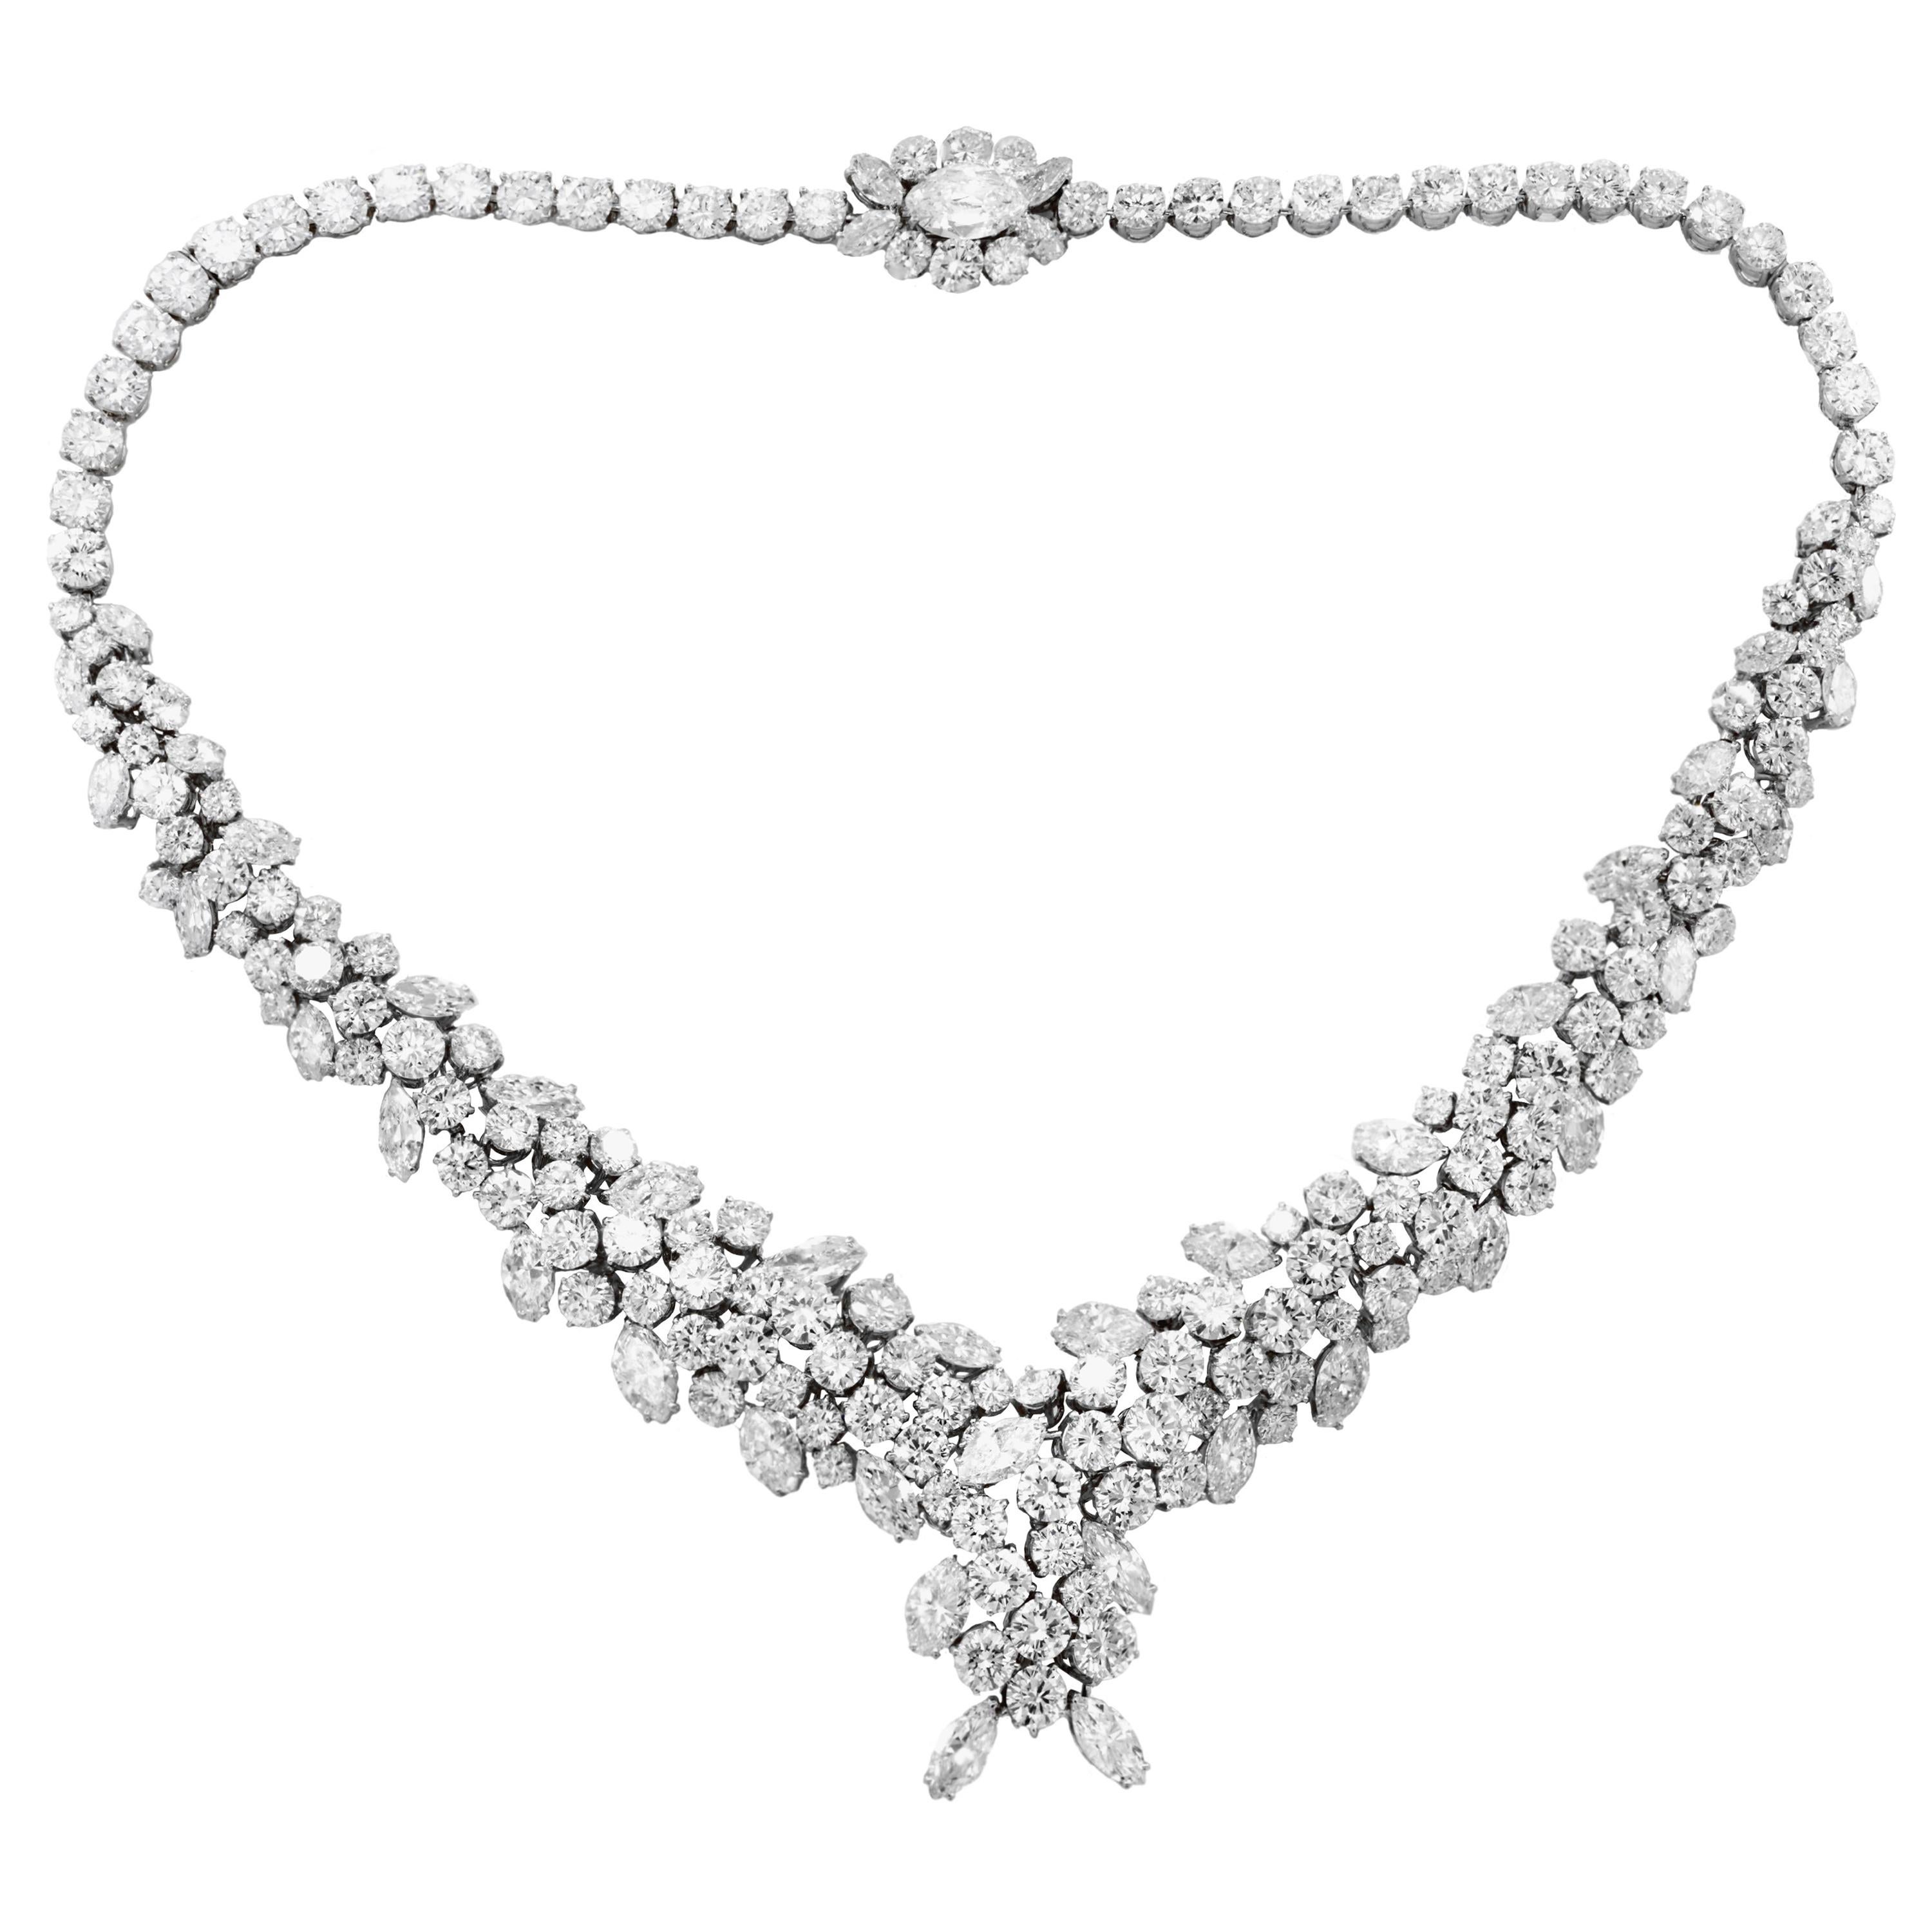 Platin-Cluster-Halskette mit Diamanten im Birnen-, Rund- und Marquise-Schliff